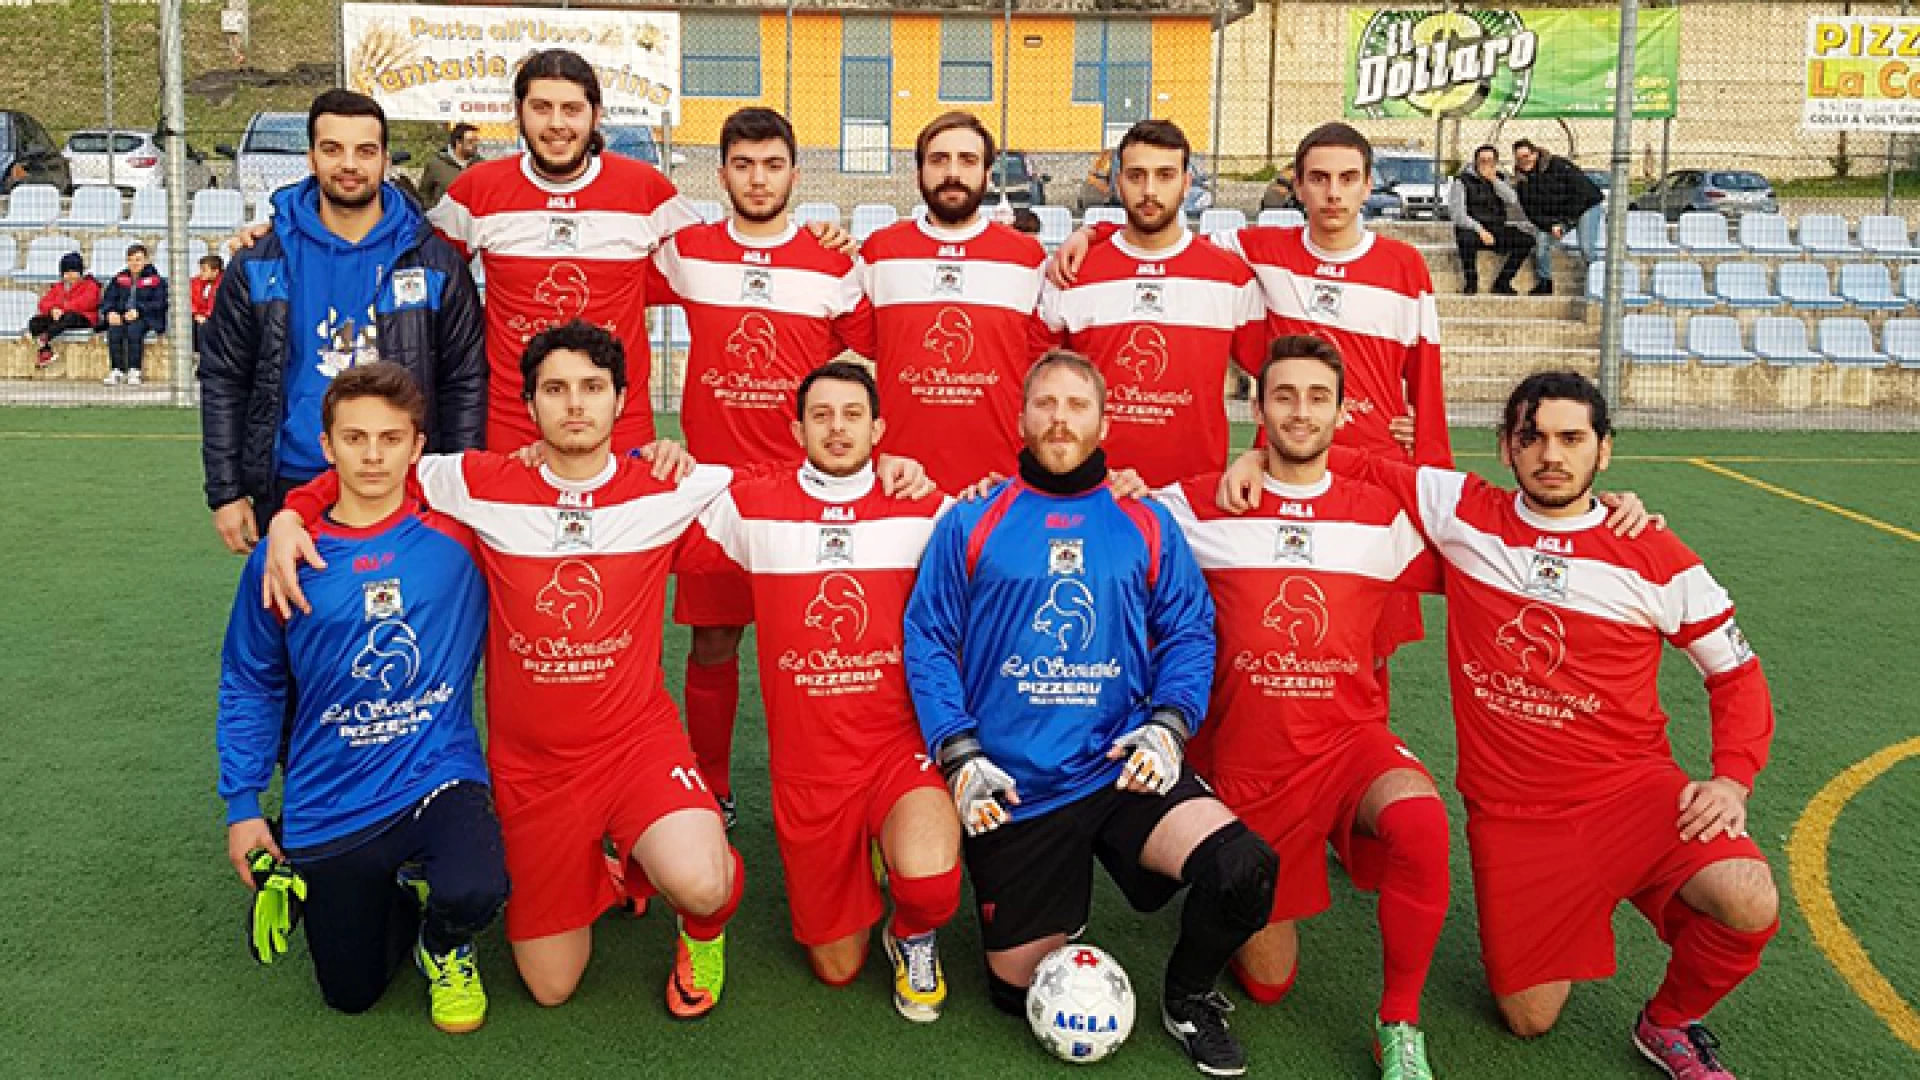 Calcio a 5: parte domani pomeriggio l’avventura della Futsal Colli nel campionato di serie C1. Al via contro la Fossaltese.